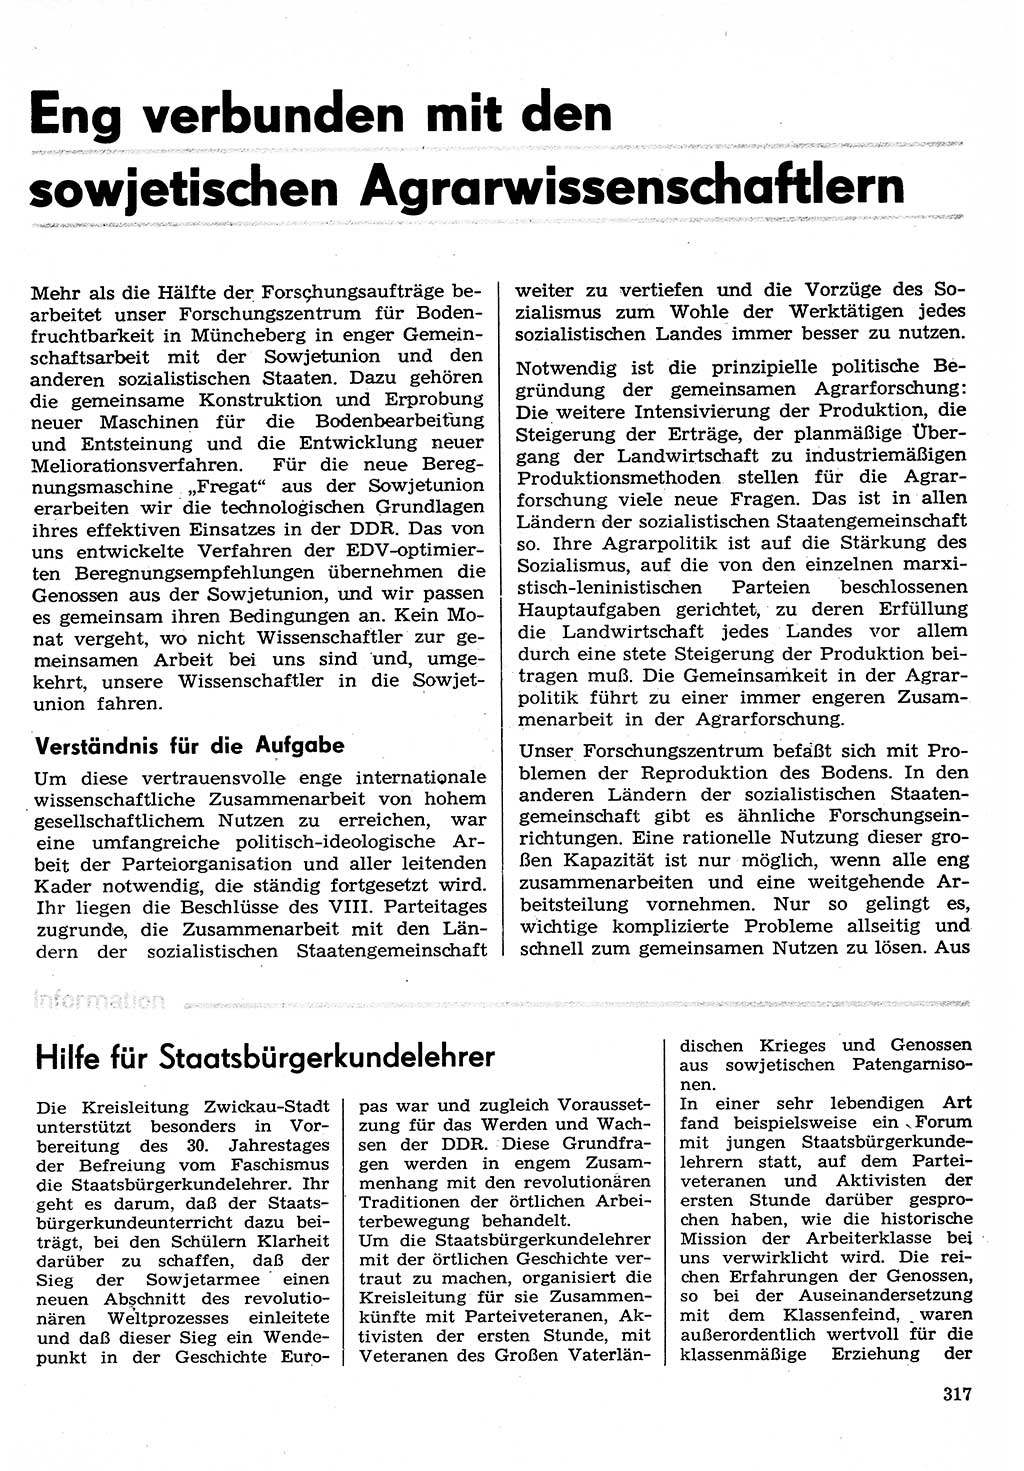 Neuer Weg (NW), Organ des Zentralkomitees (ZK) der SED (Sozialistische Einheitspartei Deutschlands) für Fragen des Parteilebens, 30. Jahrgang [Deutsche Demokratische Republik (DDR)] 1975, Seite 317 (NW ZK SED DDR 1975, S. 317)